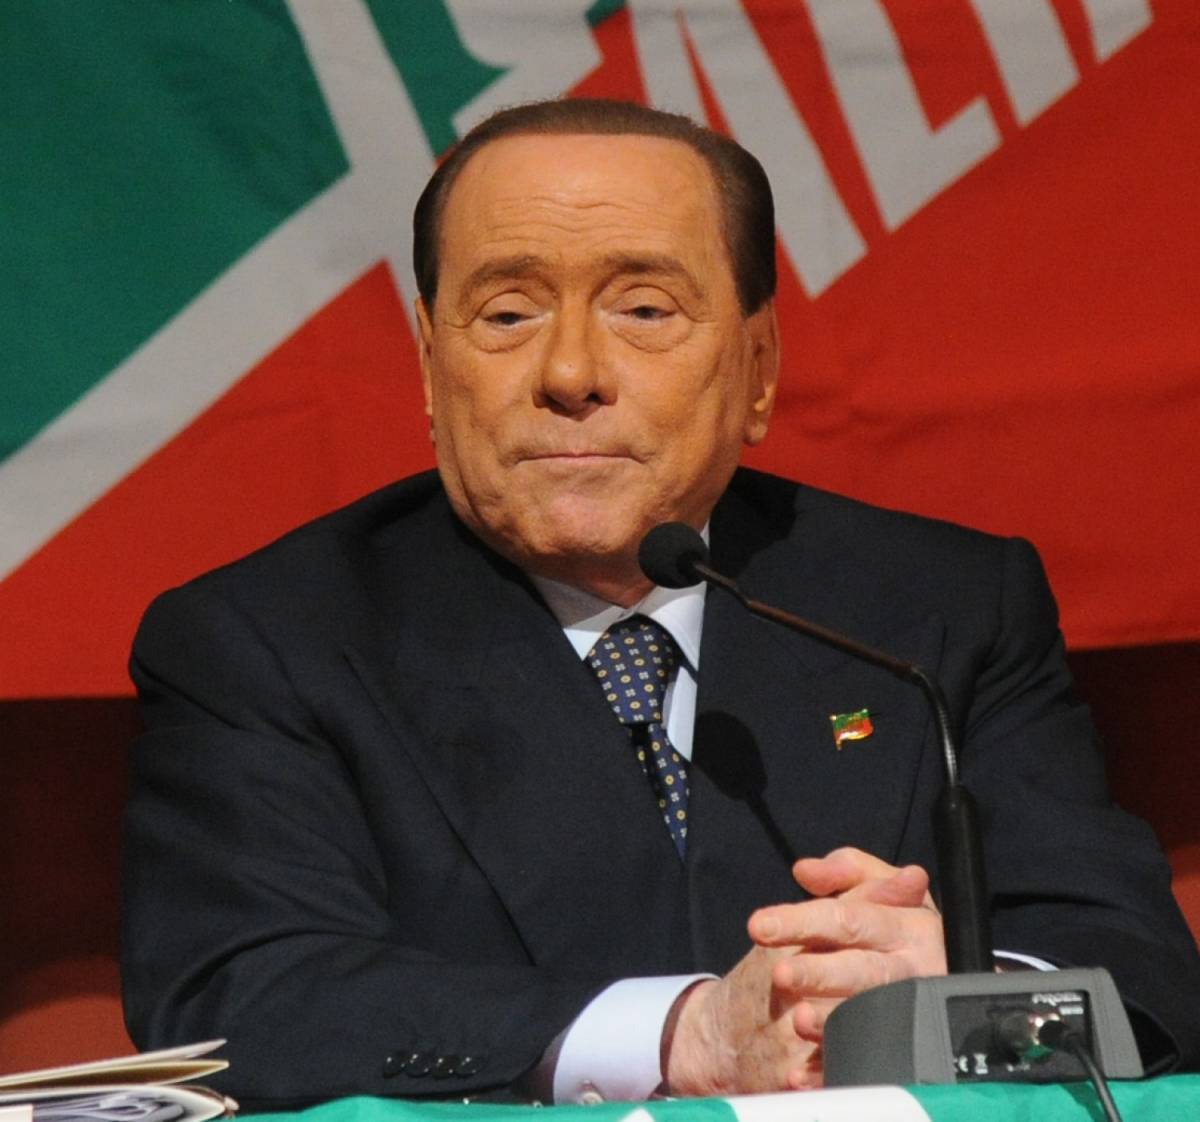 Il messaggio di Berlusconi alla convention di Pietrasanta